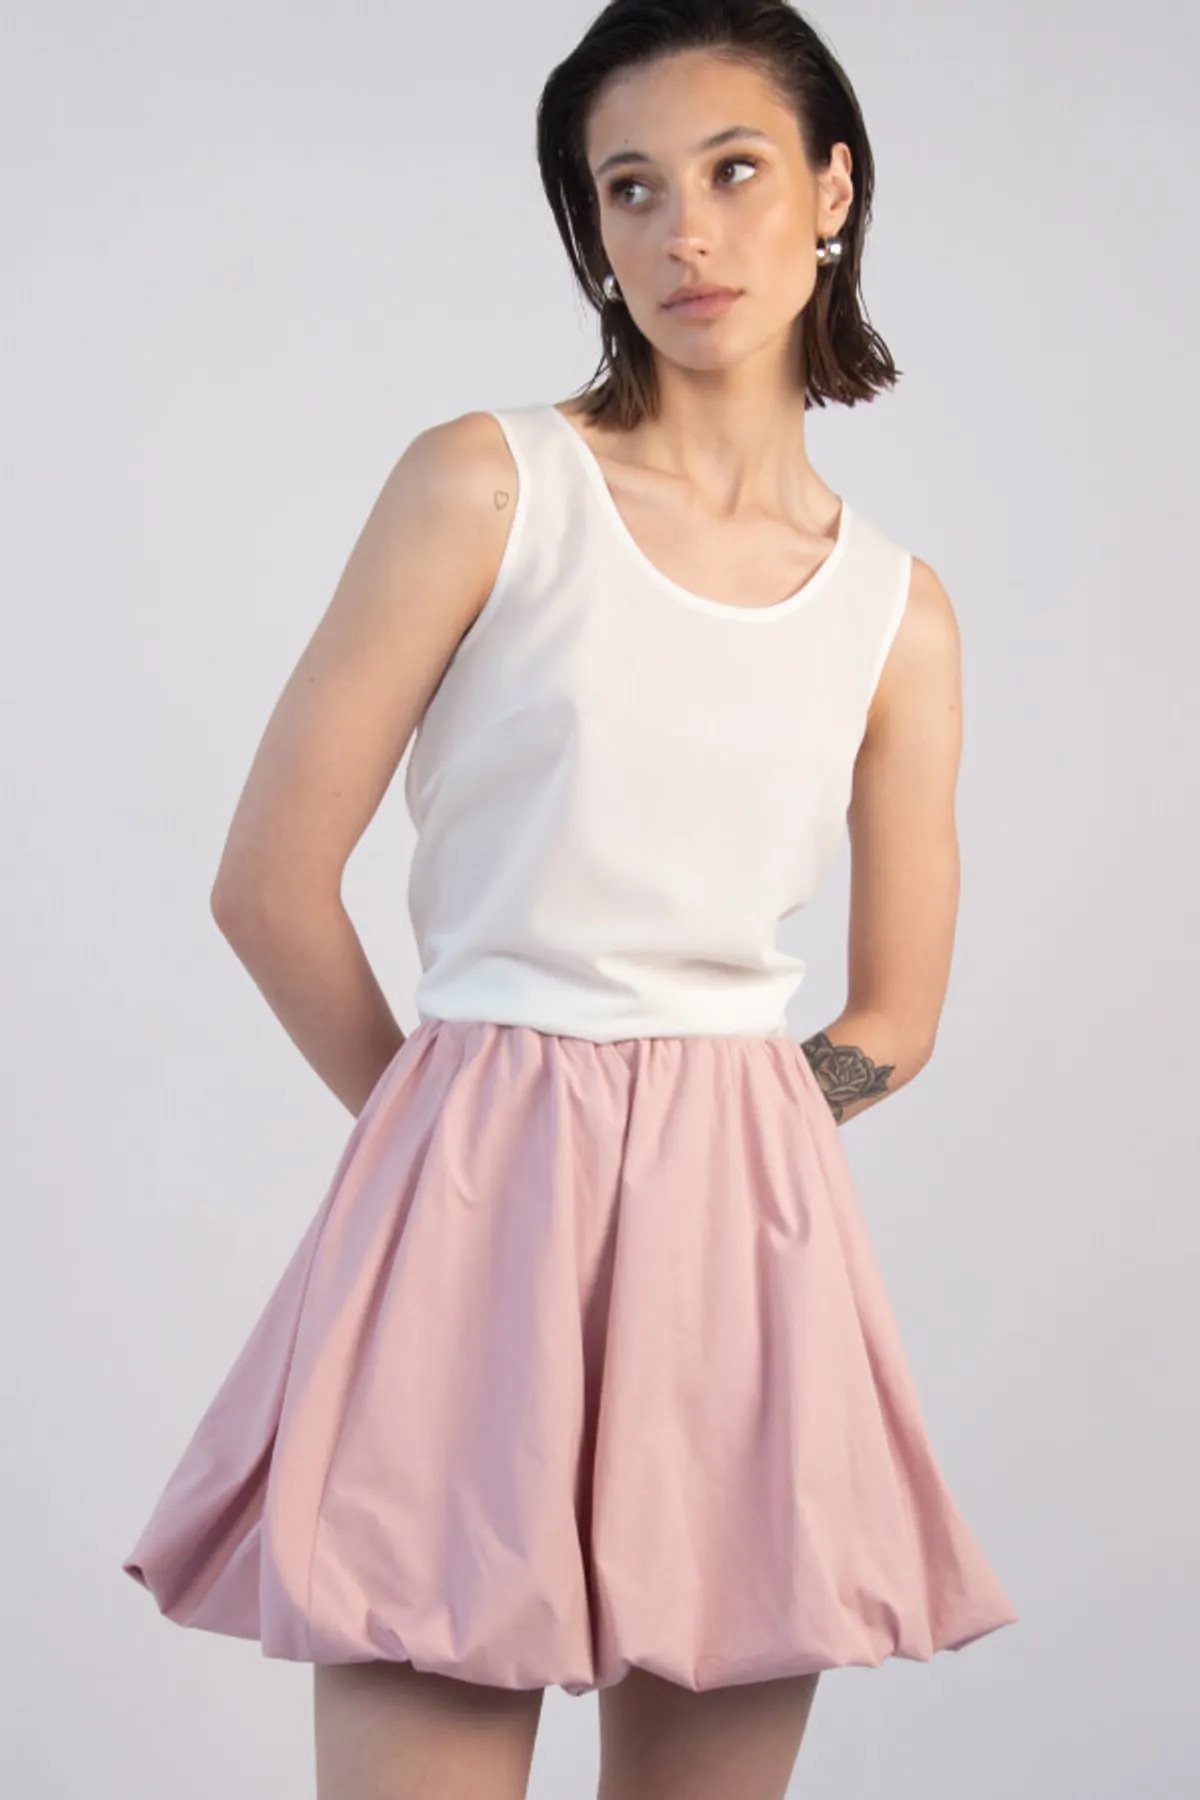 Девушка в короткой розовой юбке-баллоне из хлопка от беларуского бренда Lsd.clothing. 